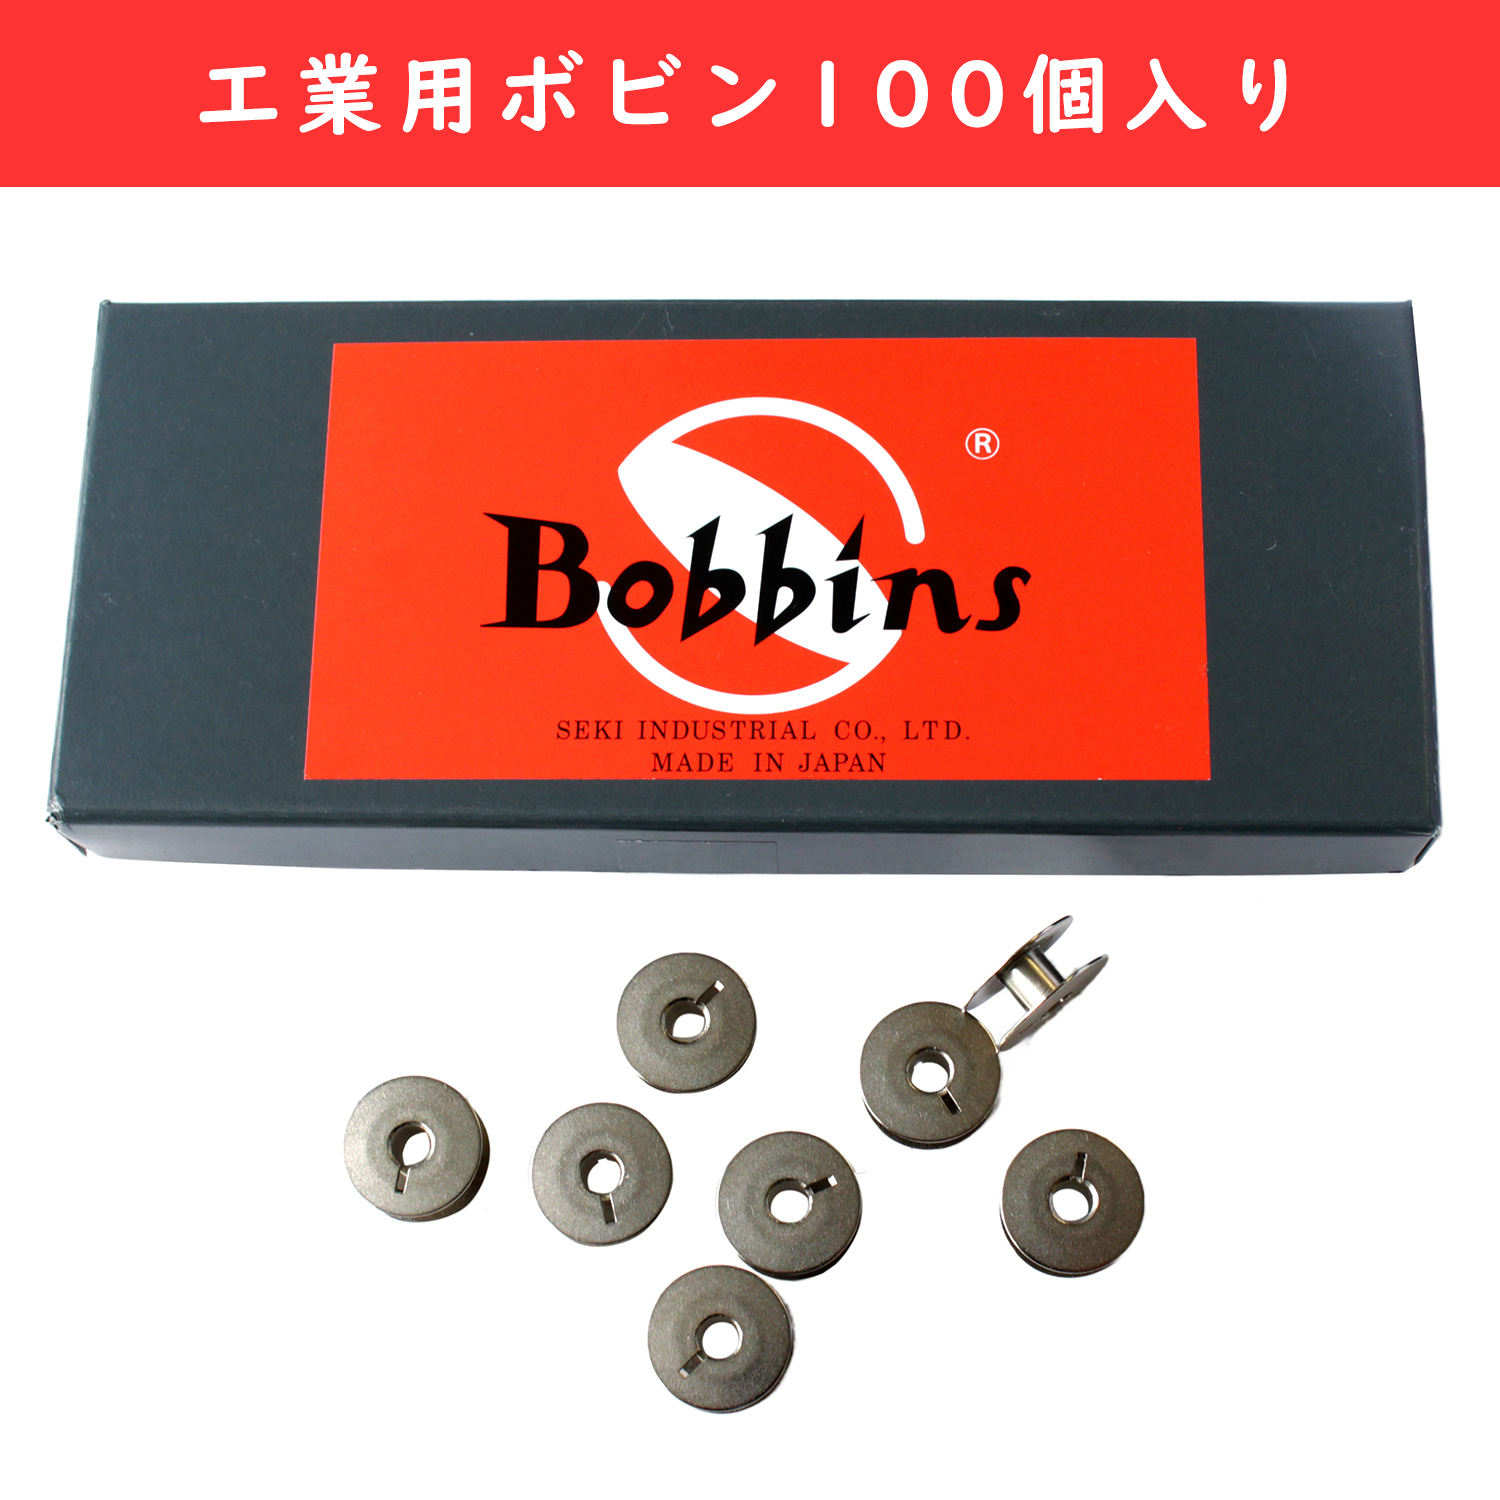 F2-78-100 Industrial Bobbins", 100 pcs set (set)